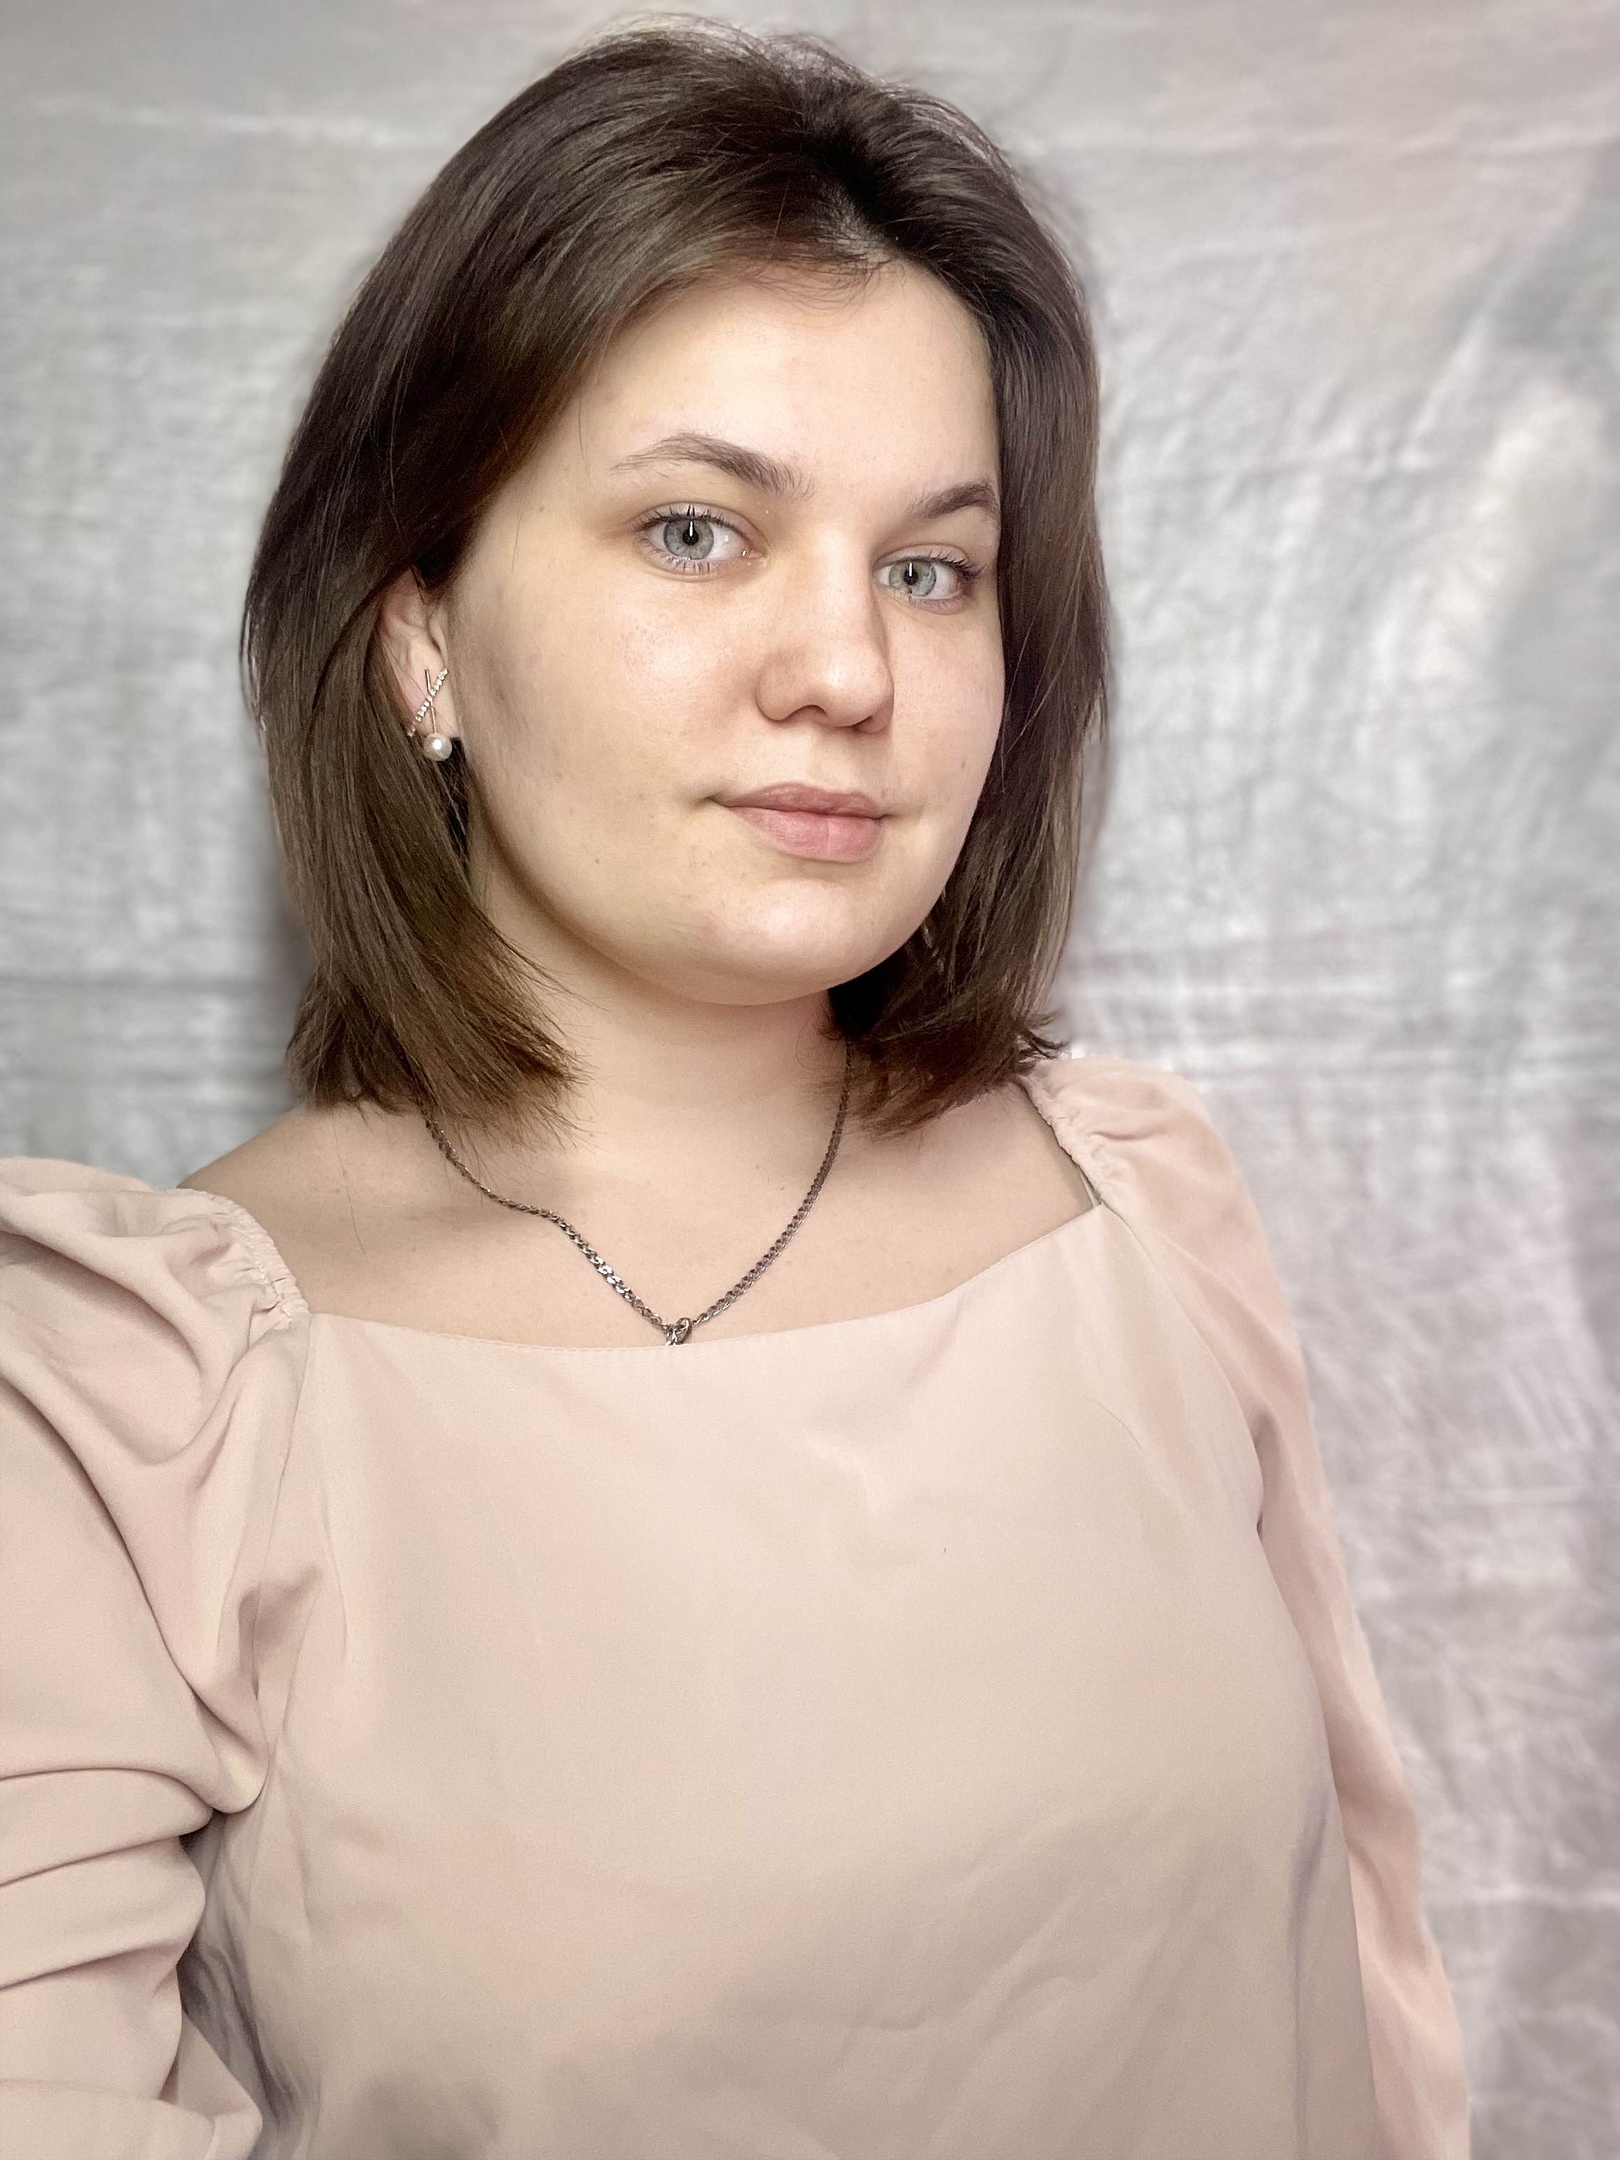 Рослякова Анастасия Александровна.